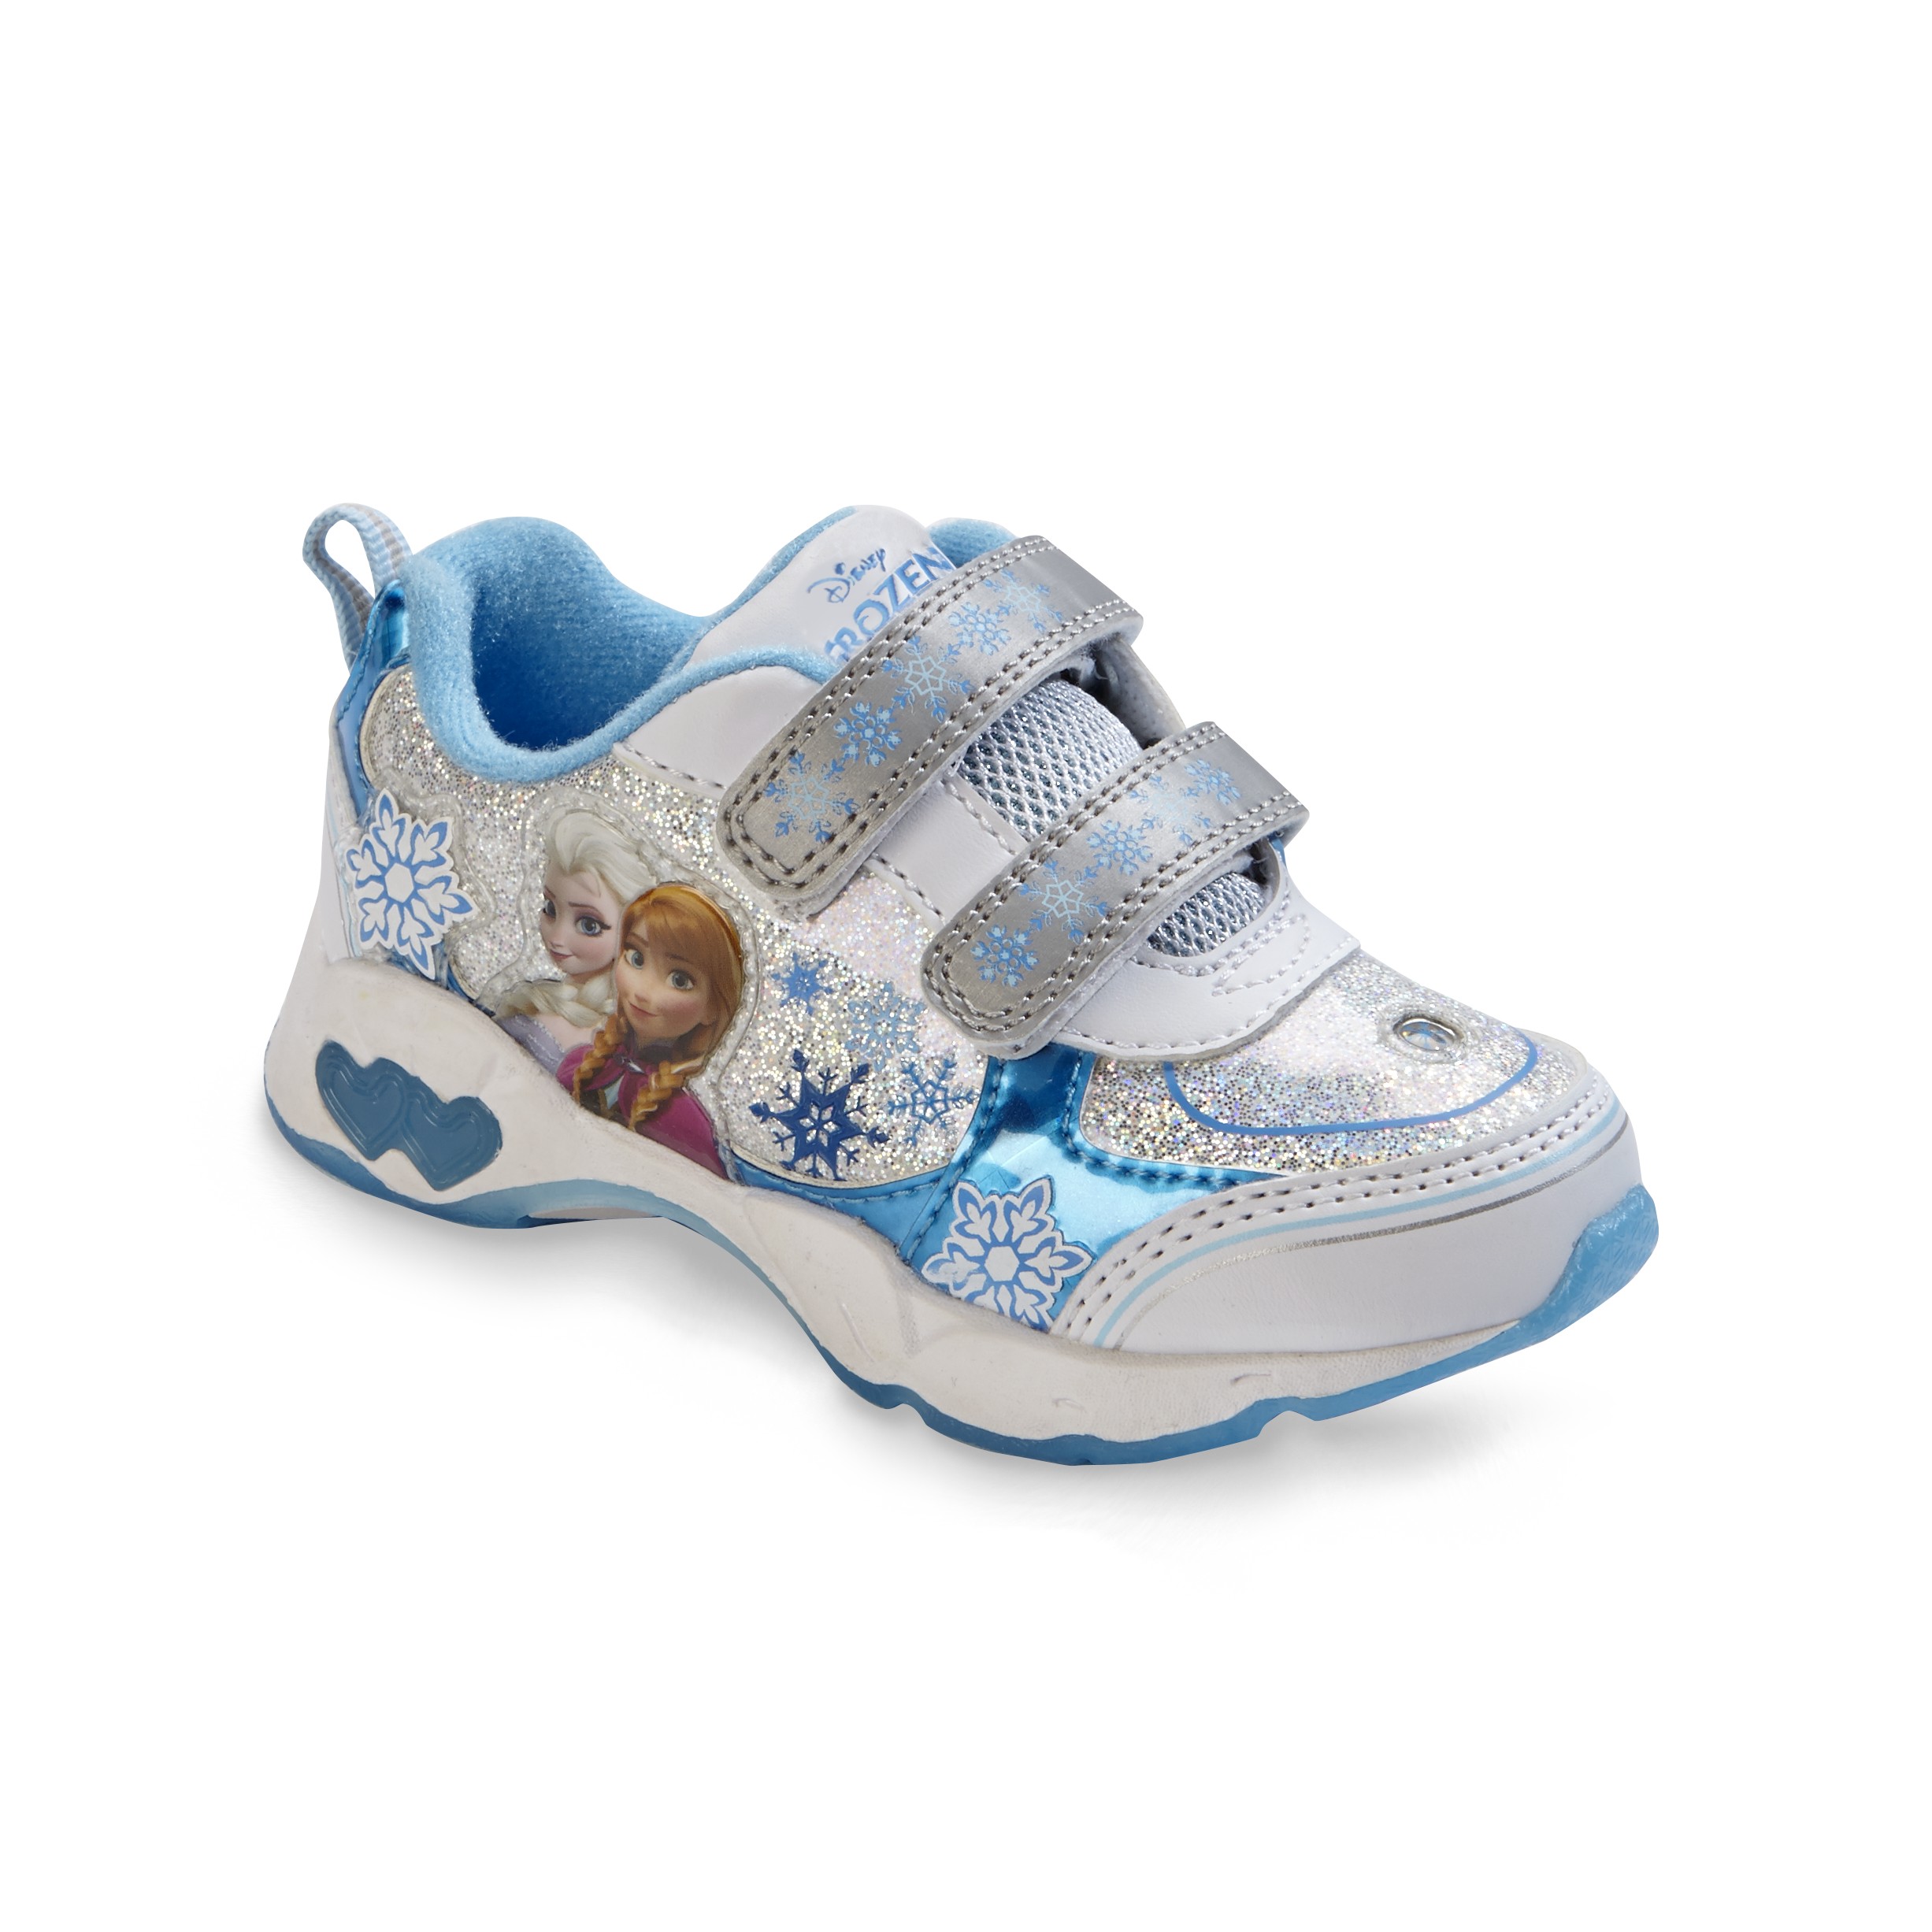 Disney Frozen Toddler Girl's Blue/White Light-Up Sneaker